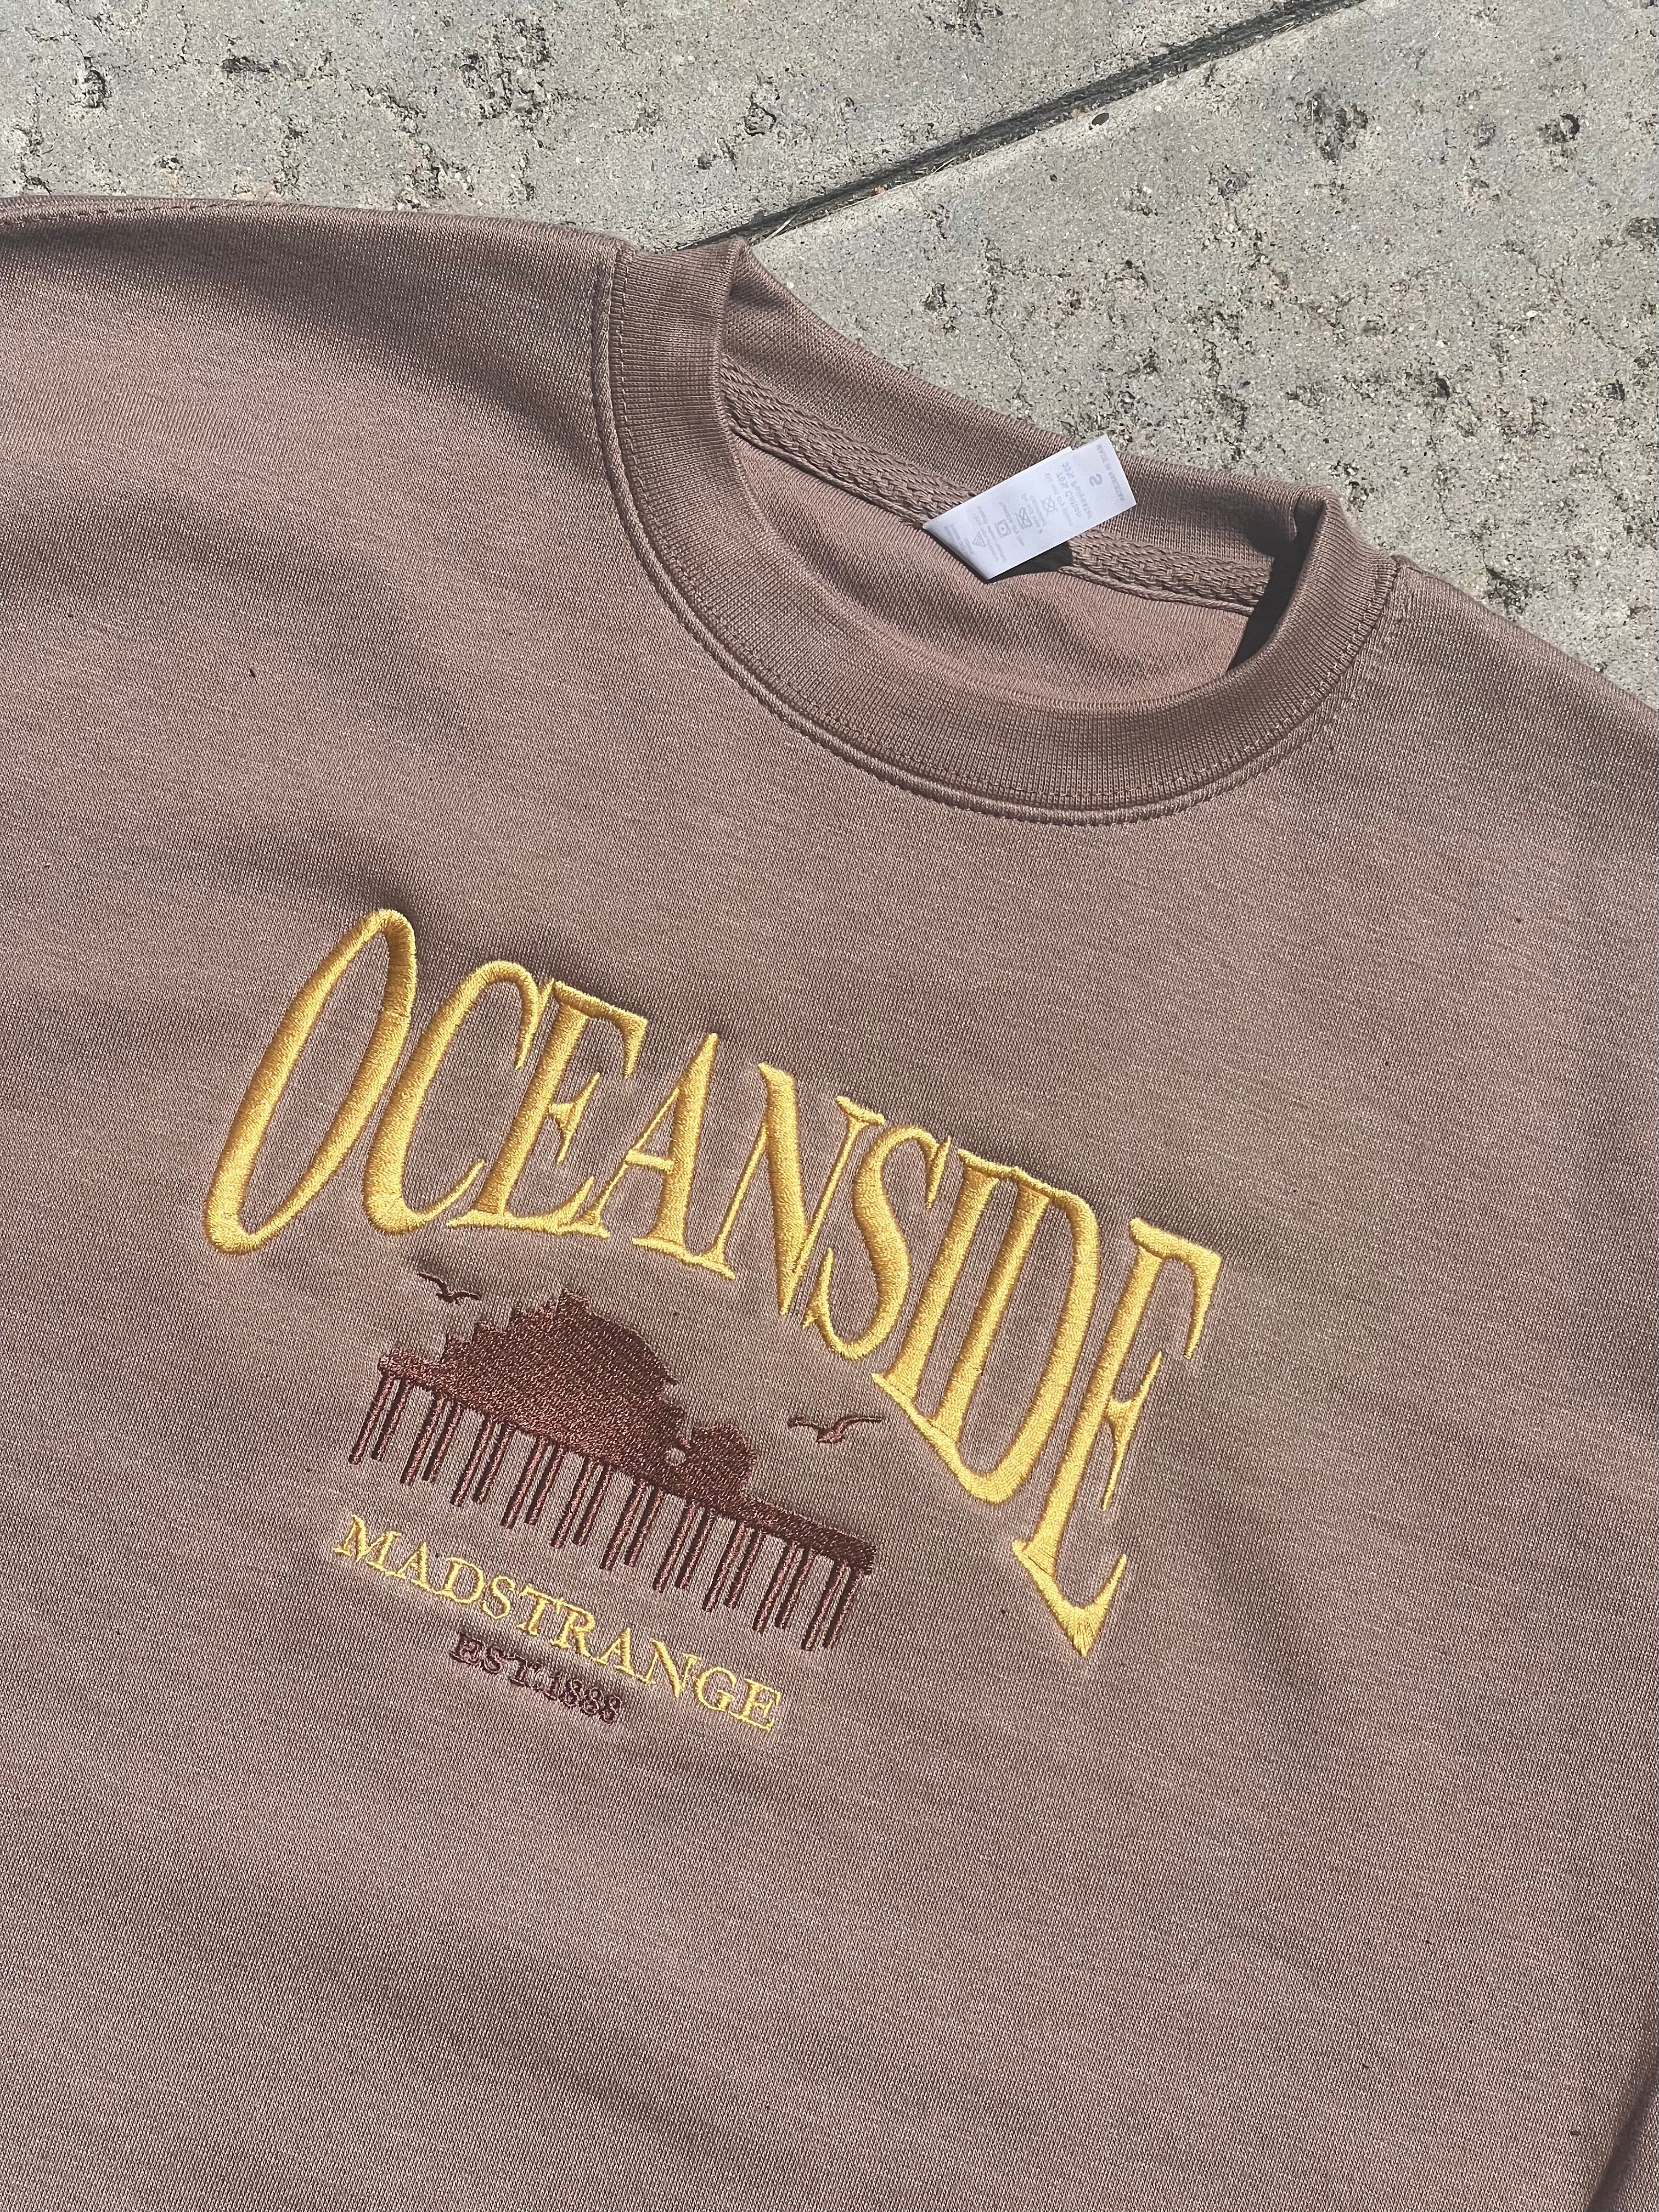 Oceanside “Aspen” Crewneck (Taupe)